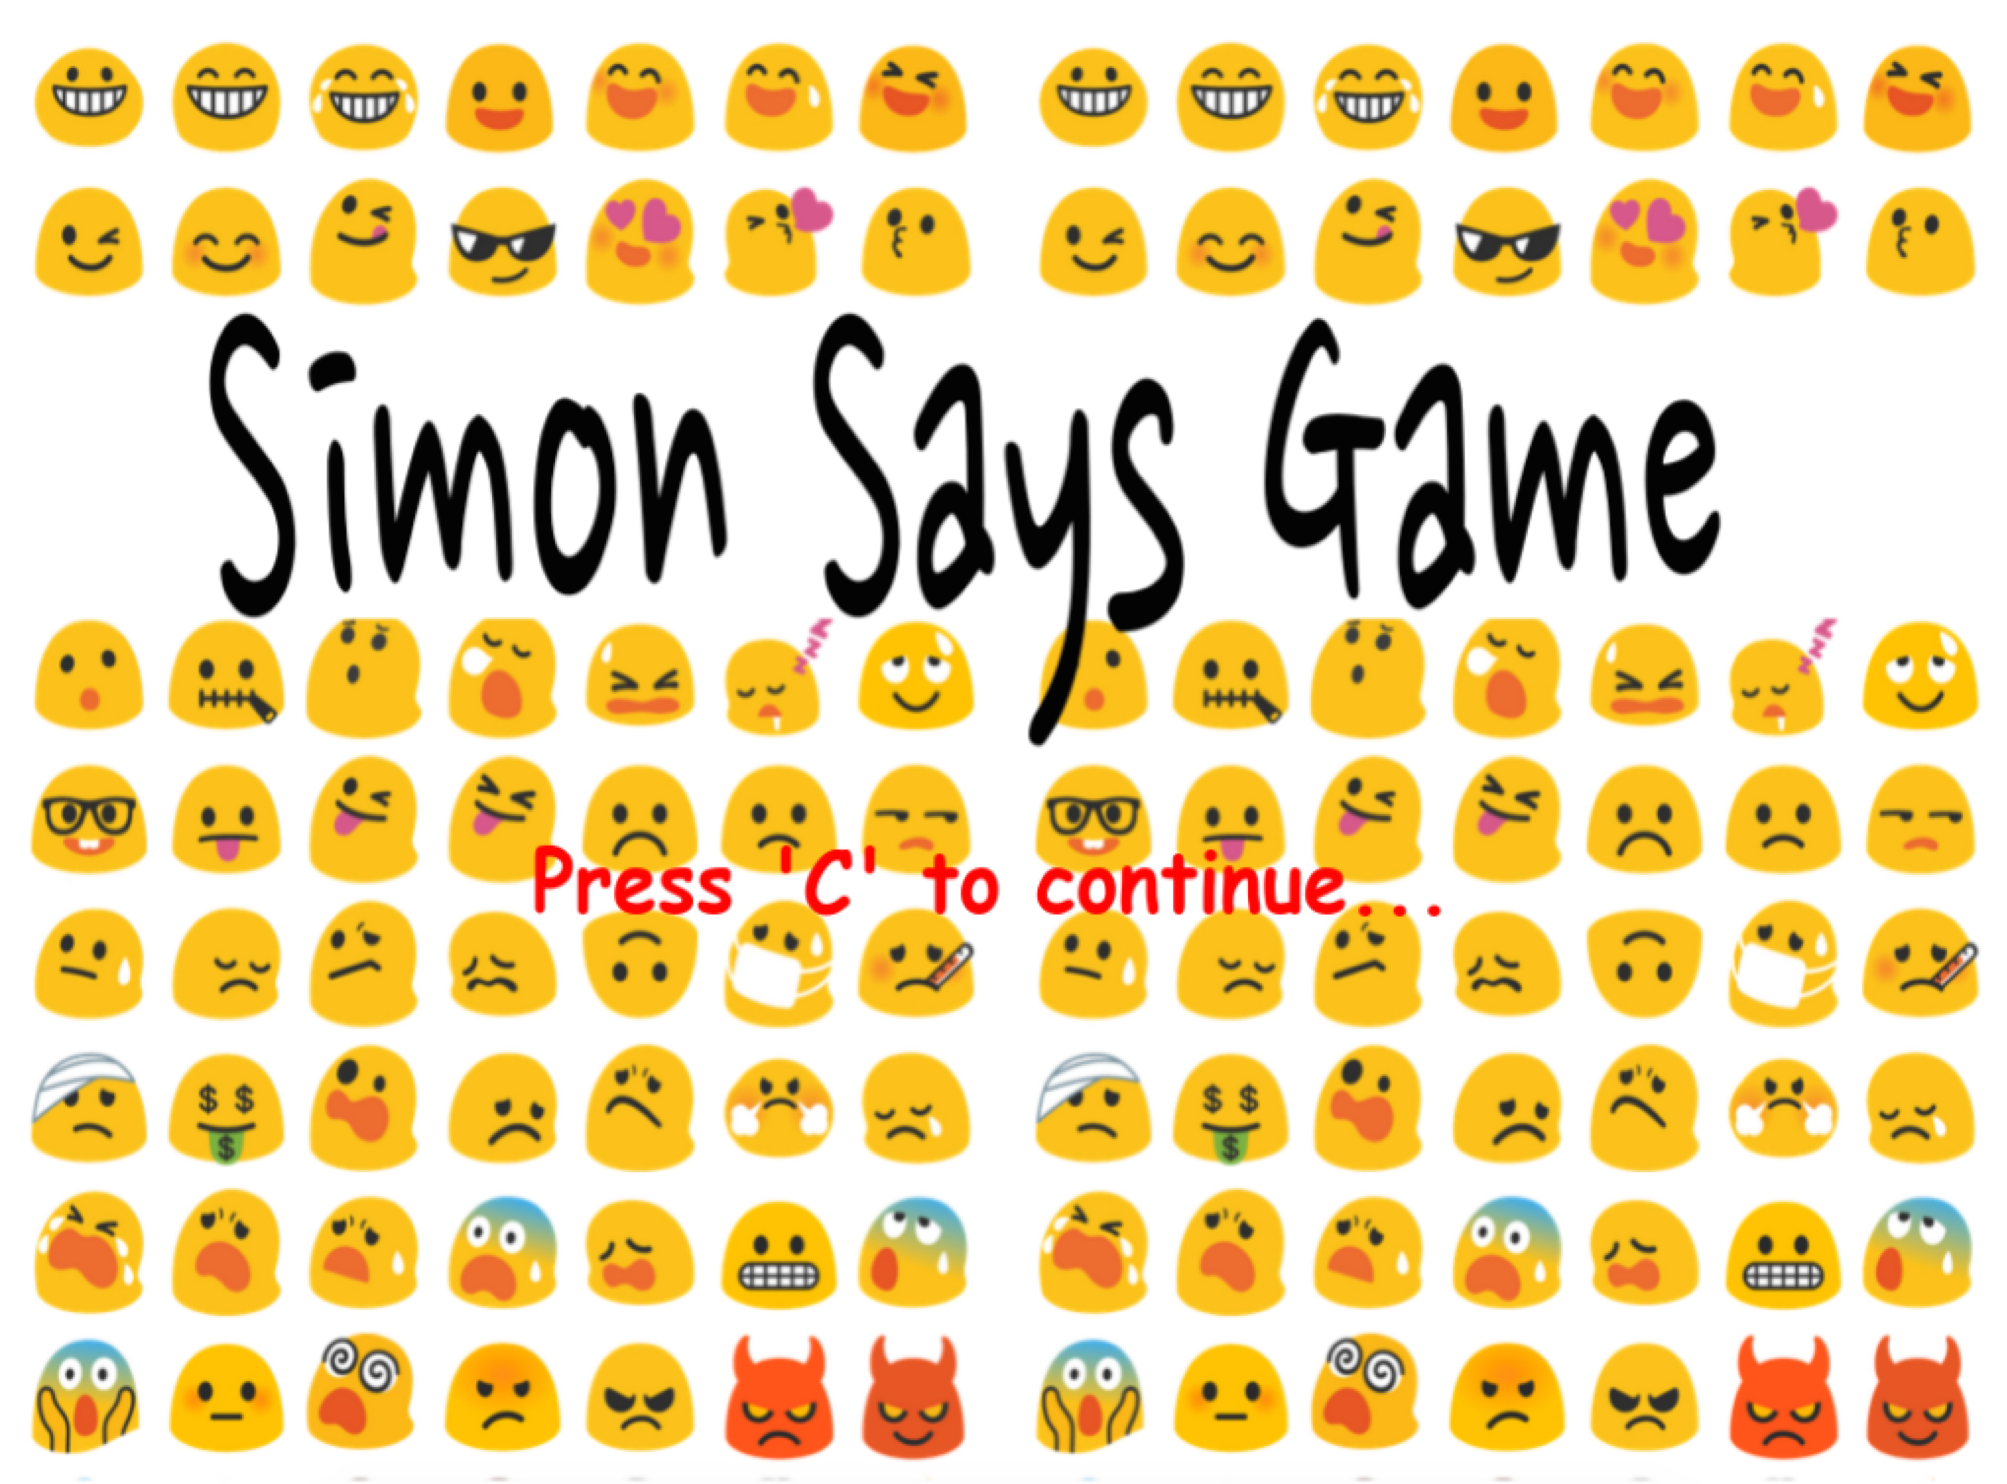 Simon Says - Game